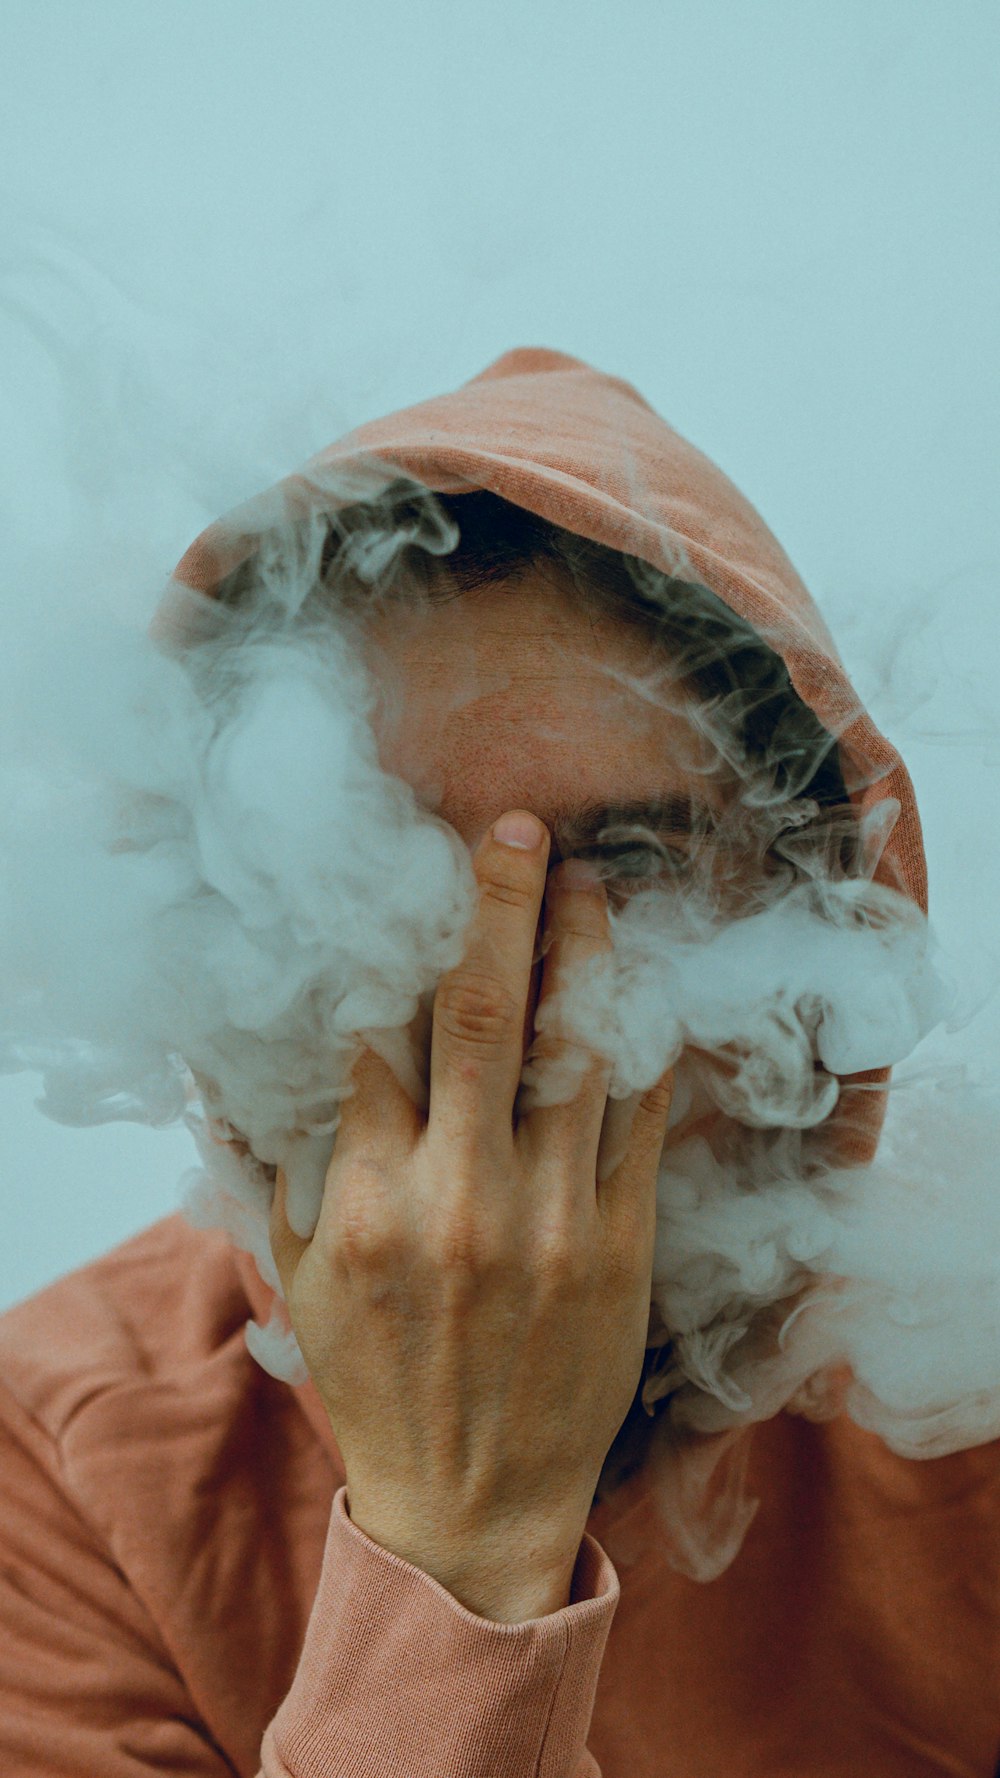 Una persona con una sudadera con capucha está fumando una nube de humo